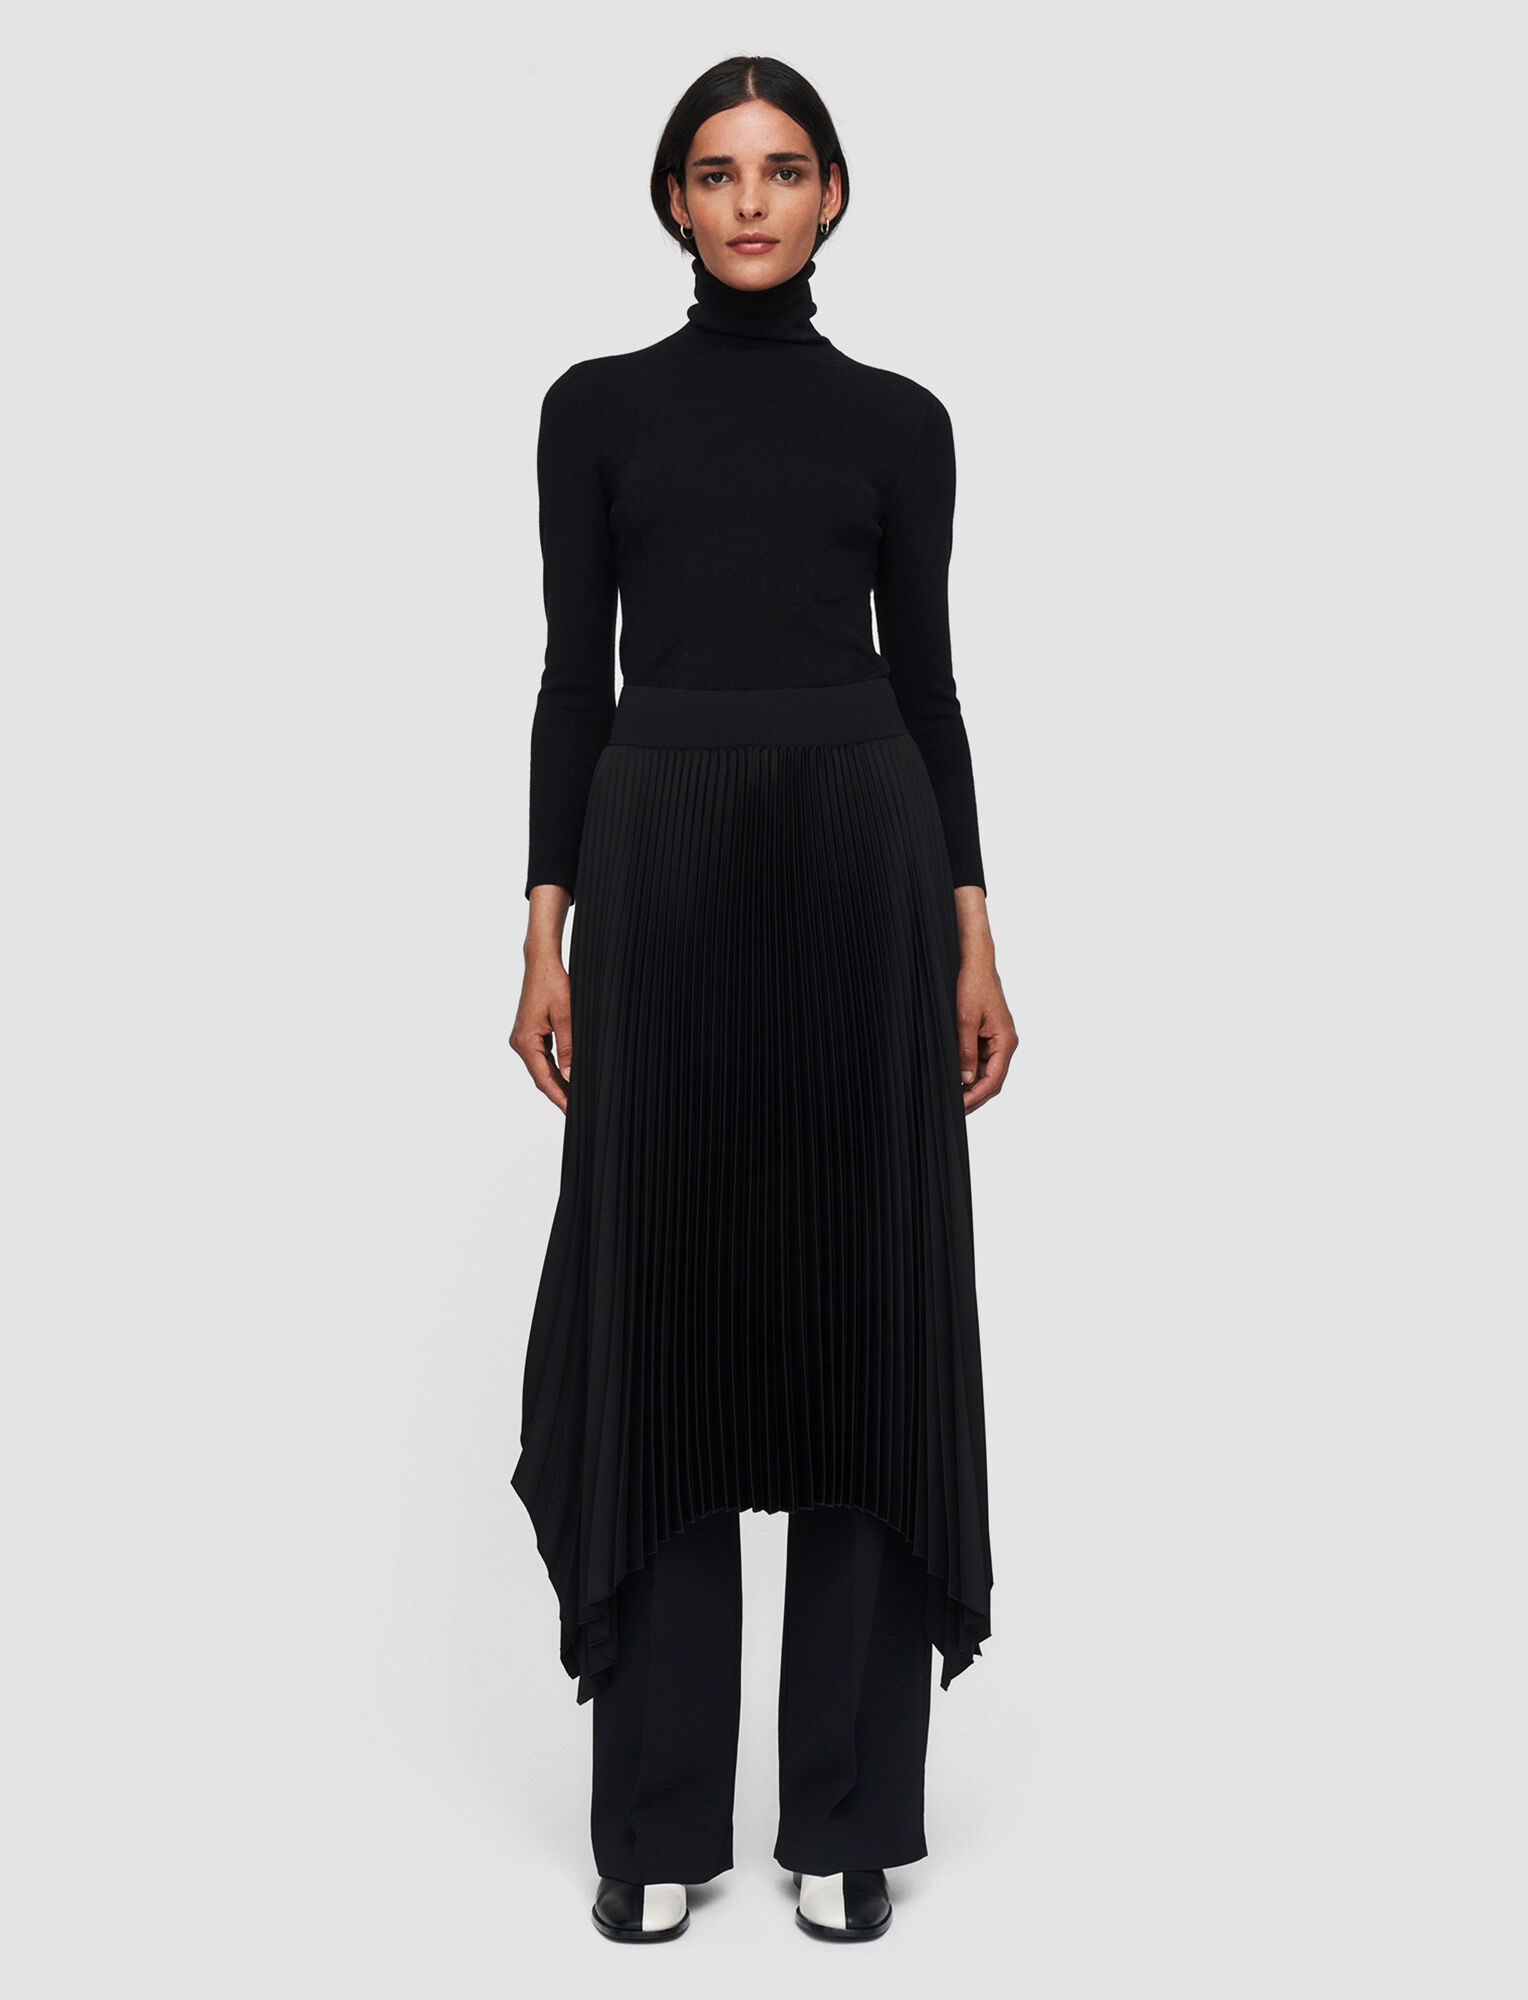 Joseph, Knit Weave Plisse Ade Skirt, in Black